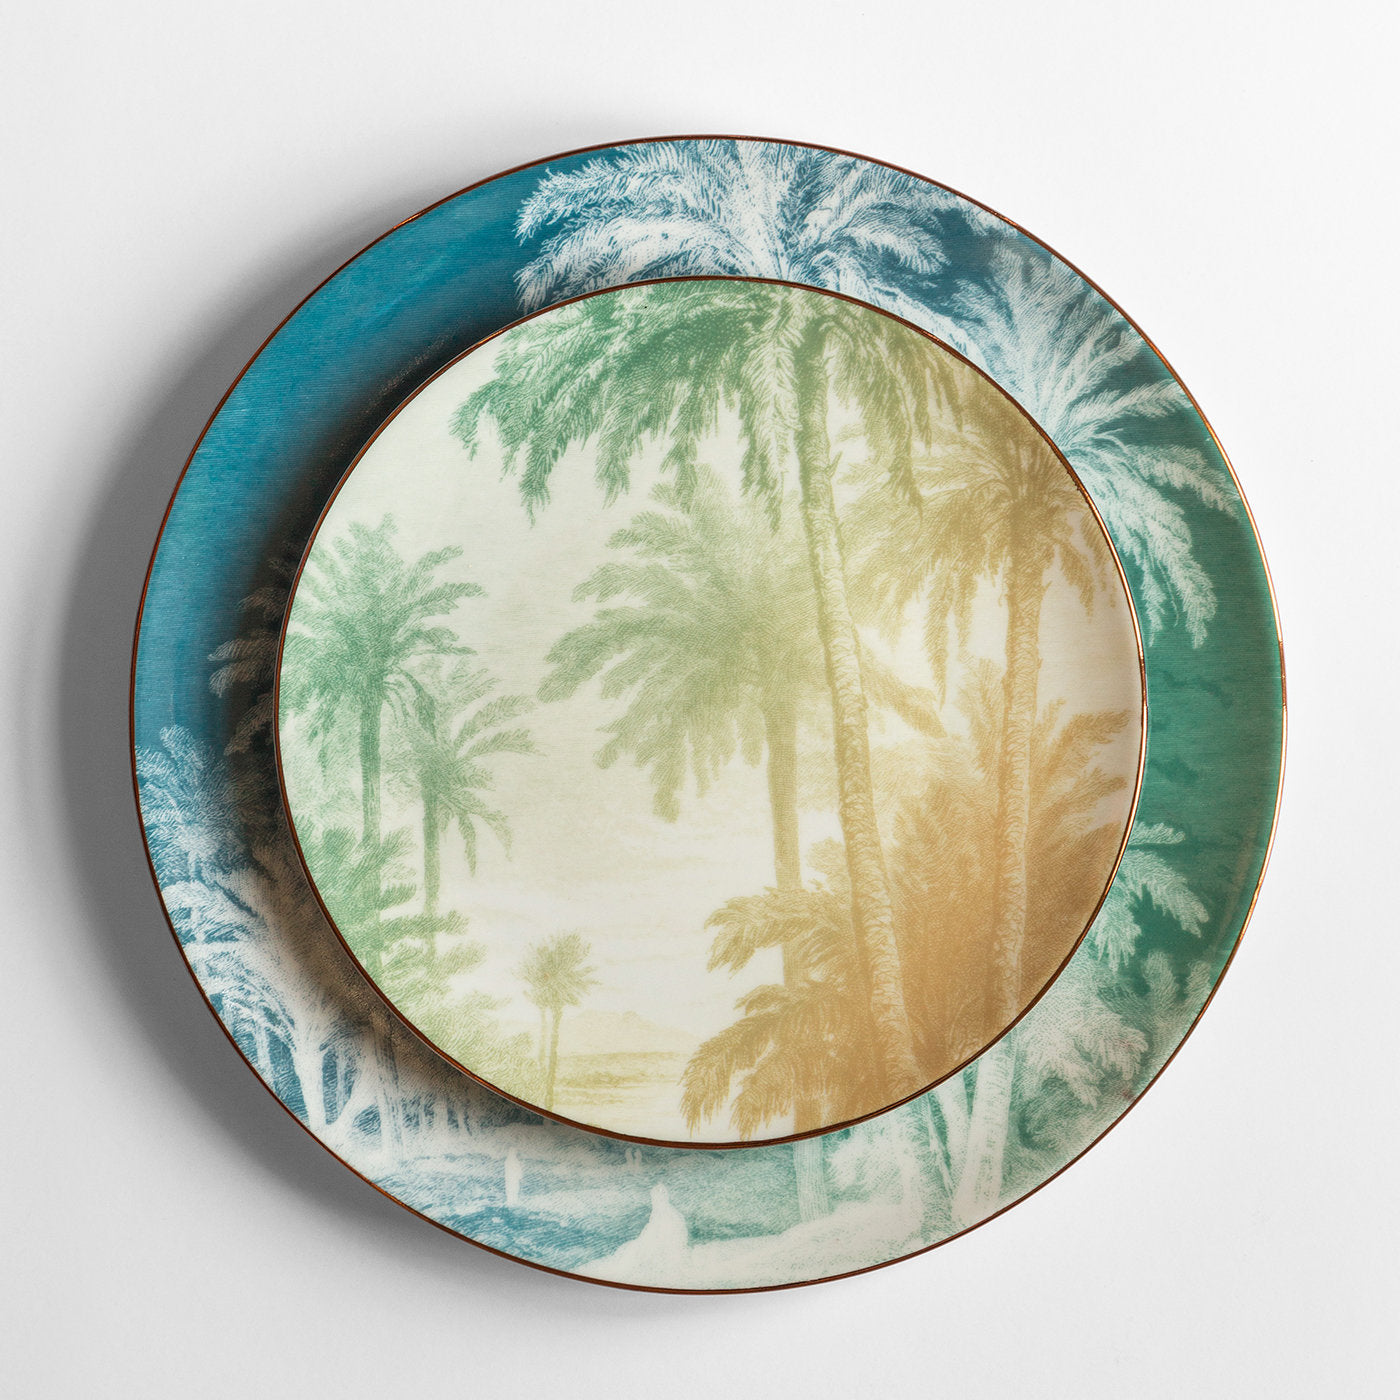 Galtaji Set Of 2 Porcelain Dessert Plates With Landscape #3 - Alternative view 1